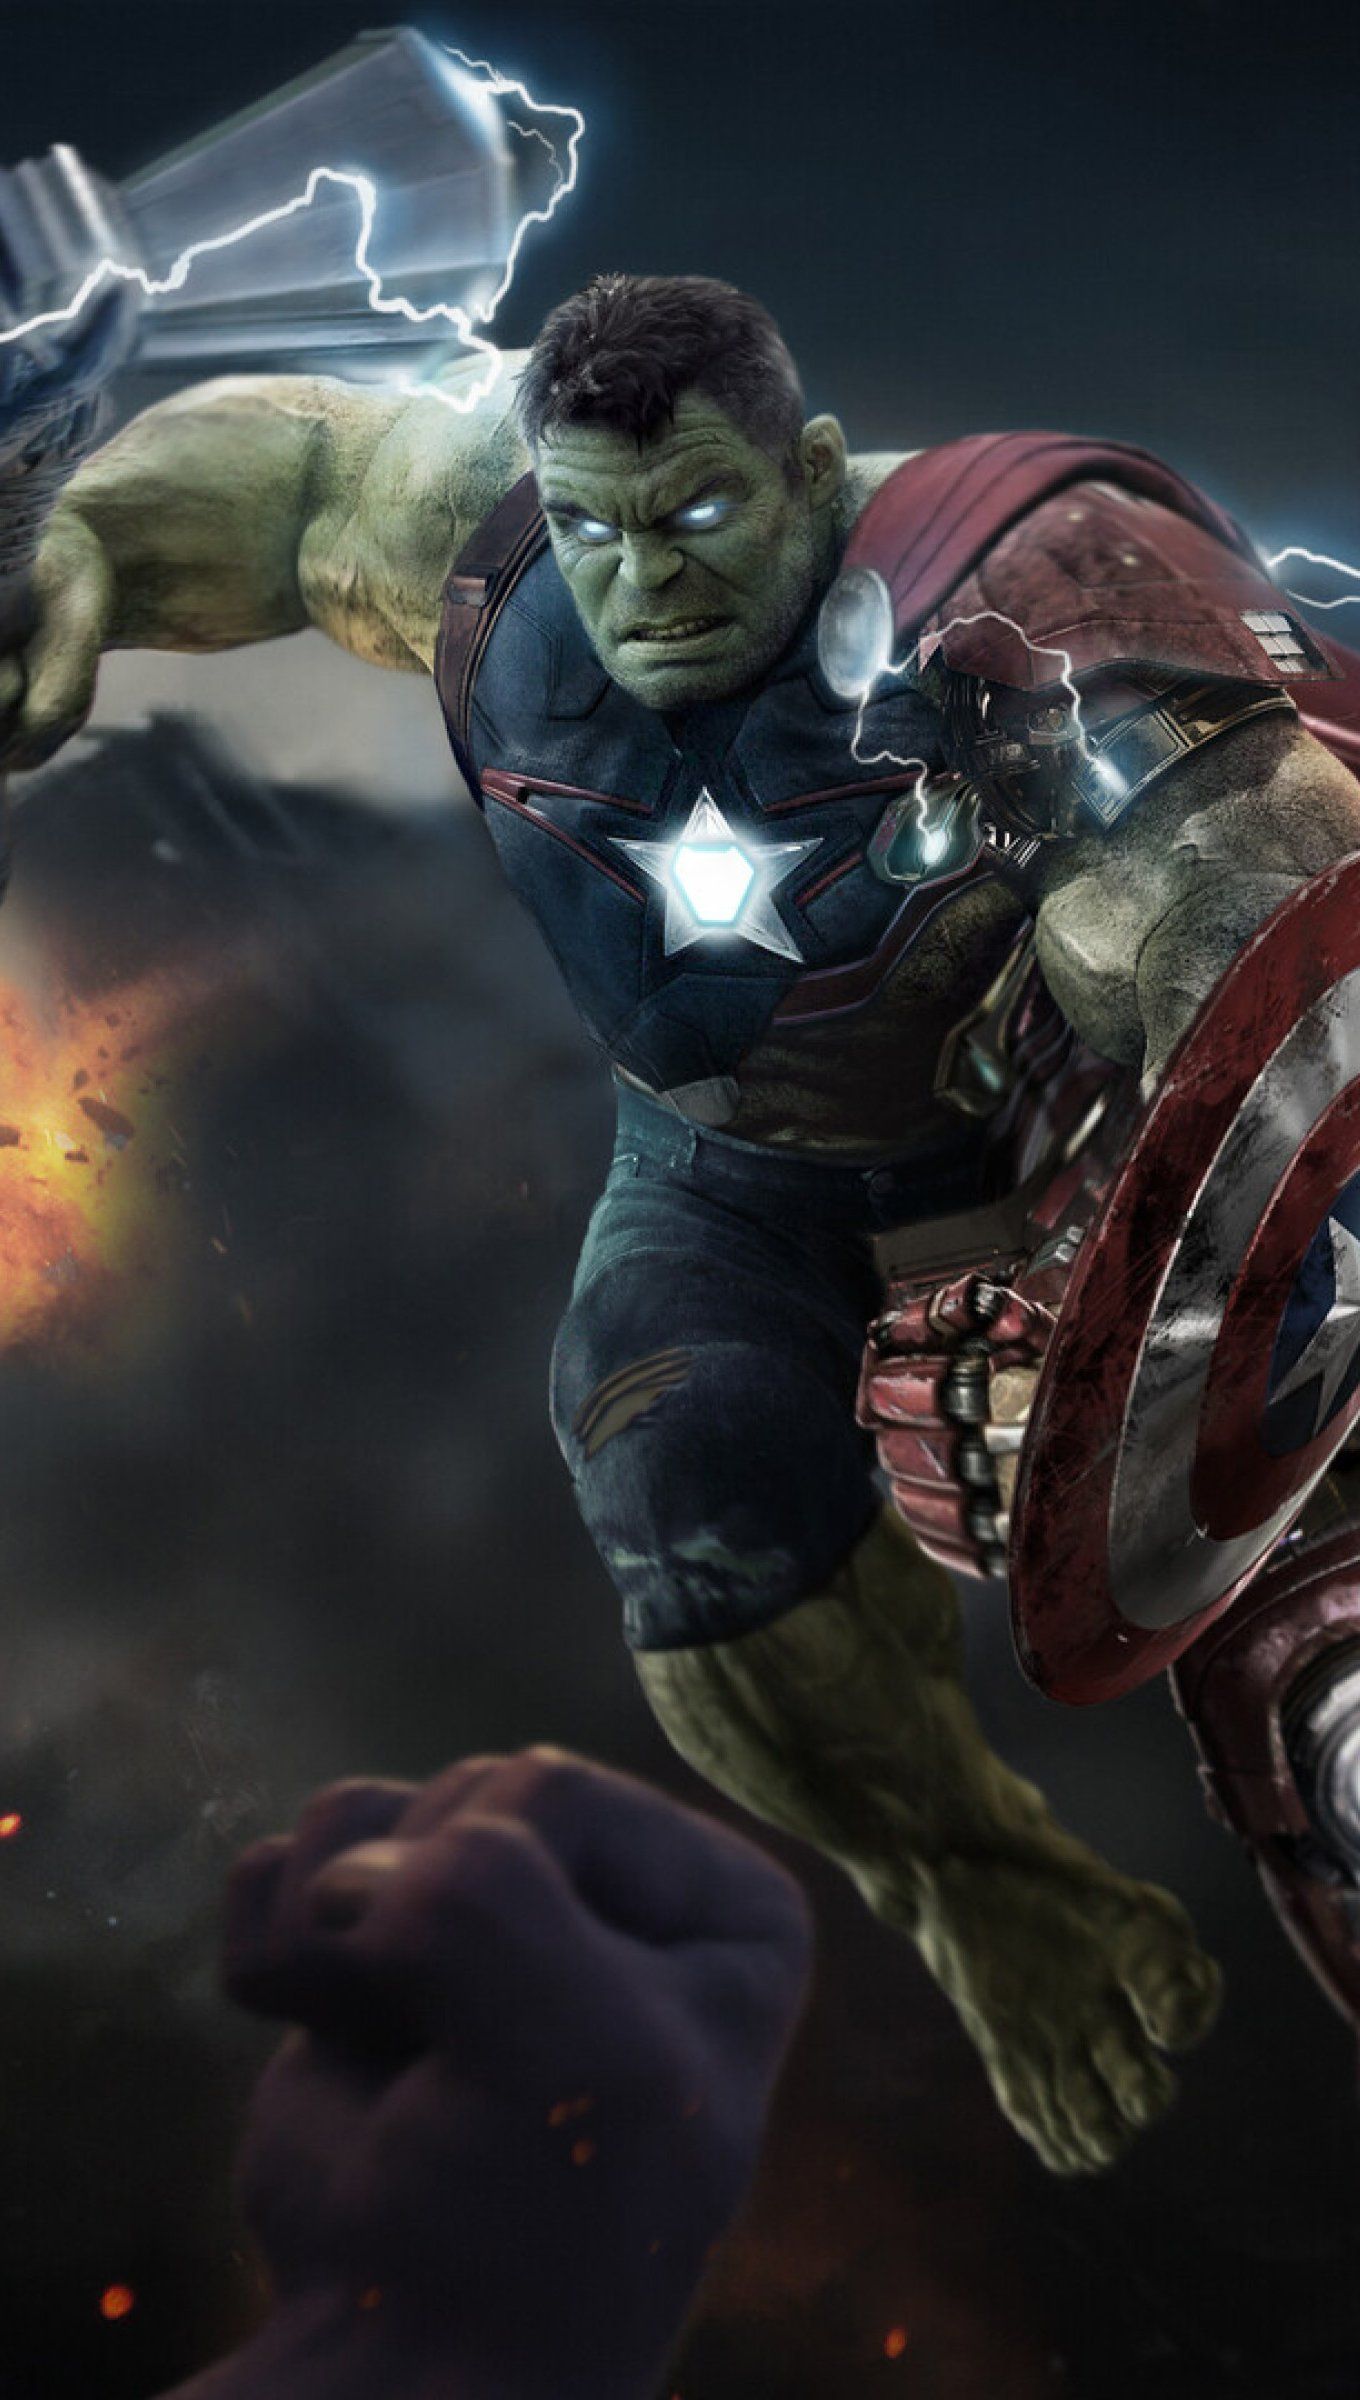 Hulk in Avengers Endgame Wallpaper 4k Ultra HD